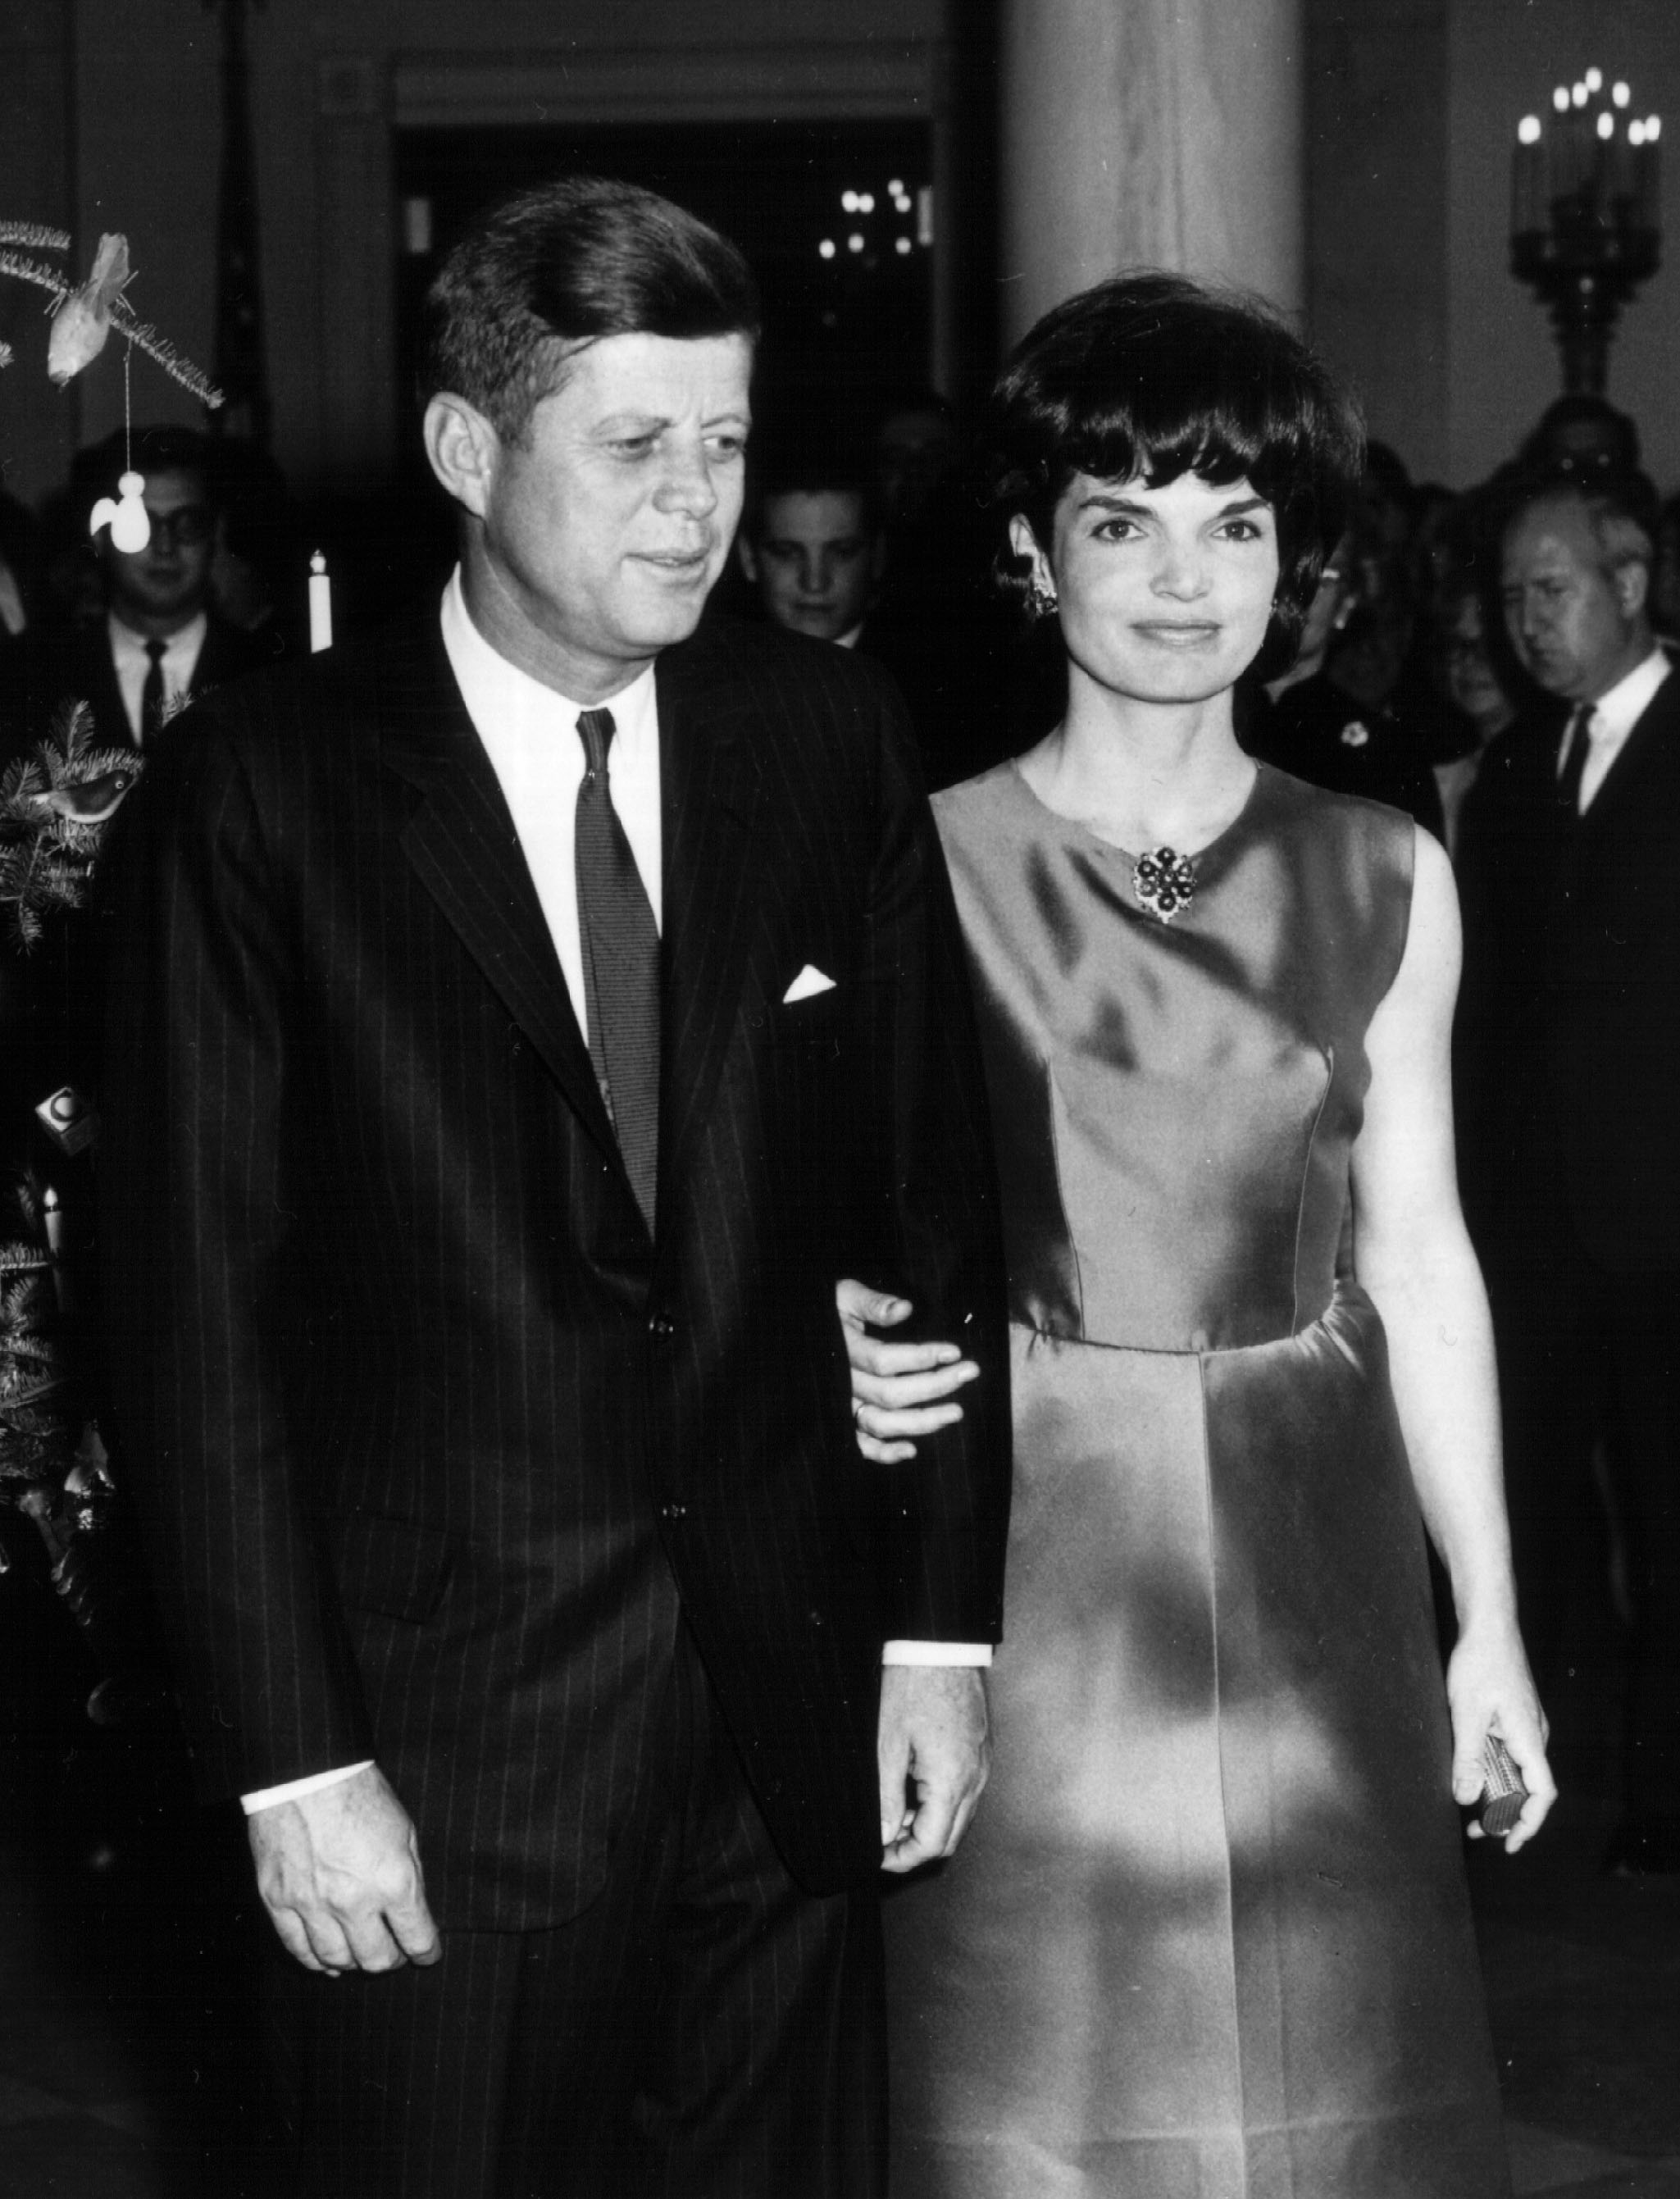 Le président John F. Kennedy et la première dame Jacqueline Kennedy assistent à une cérémonie à la Maison Blanche en décembre 1962 à Washington, DC. | Source: Getty Images.